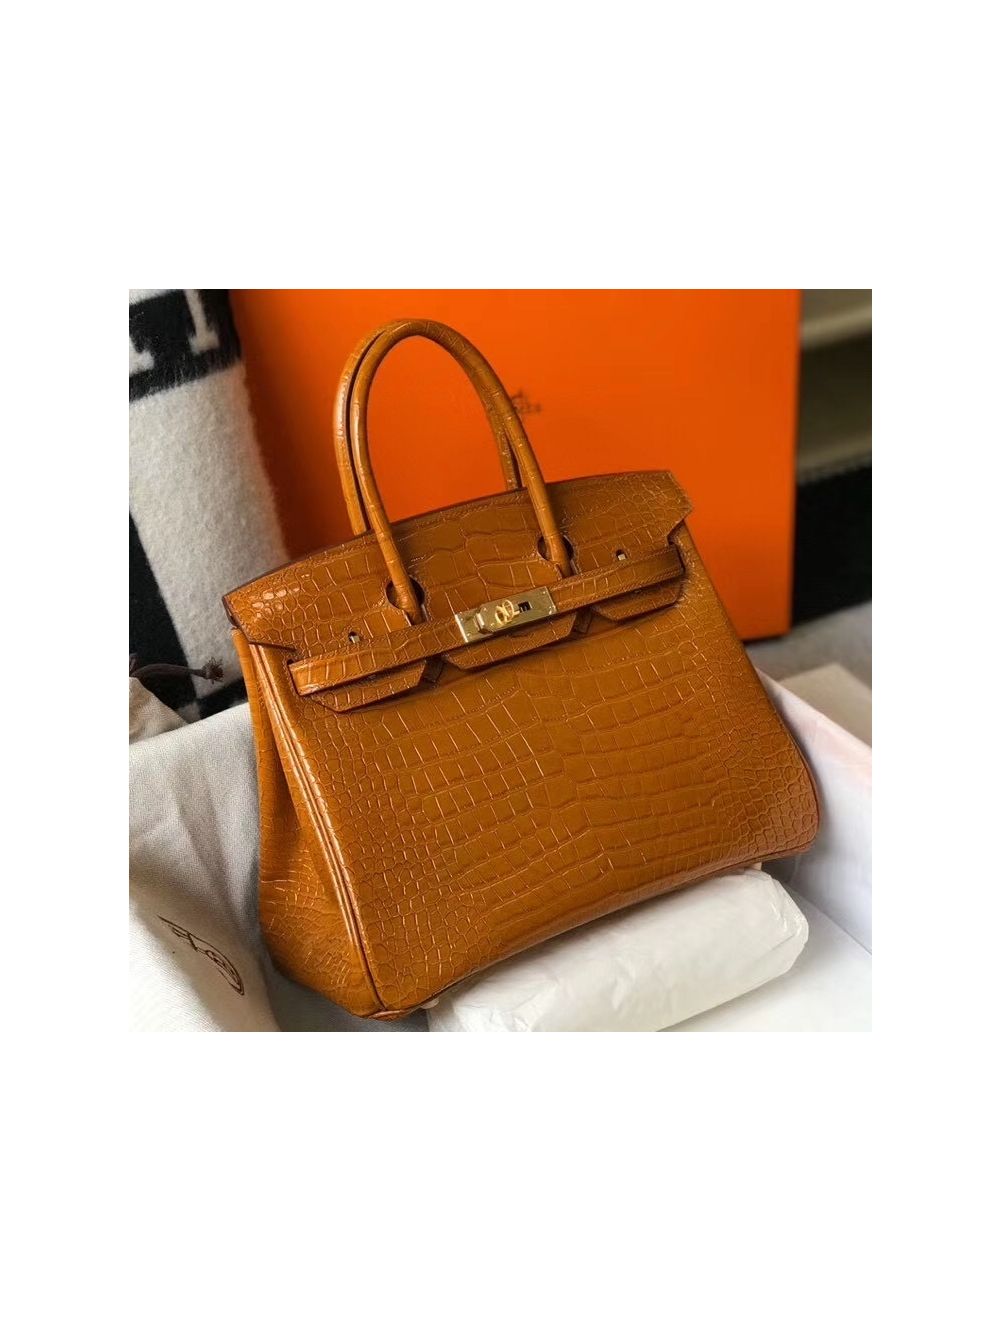 Hermes brown crocodile Birkin bag.  Hermes birkin handbags, Bags, Hermes  bag birkin